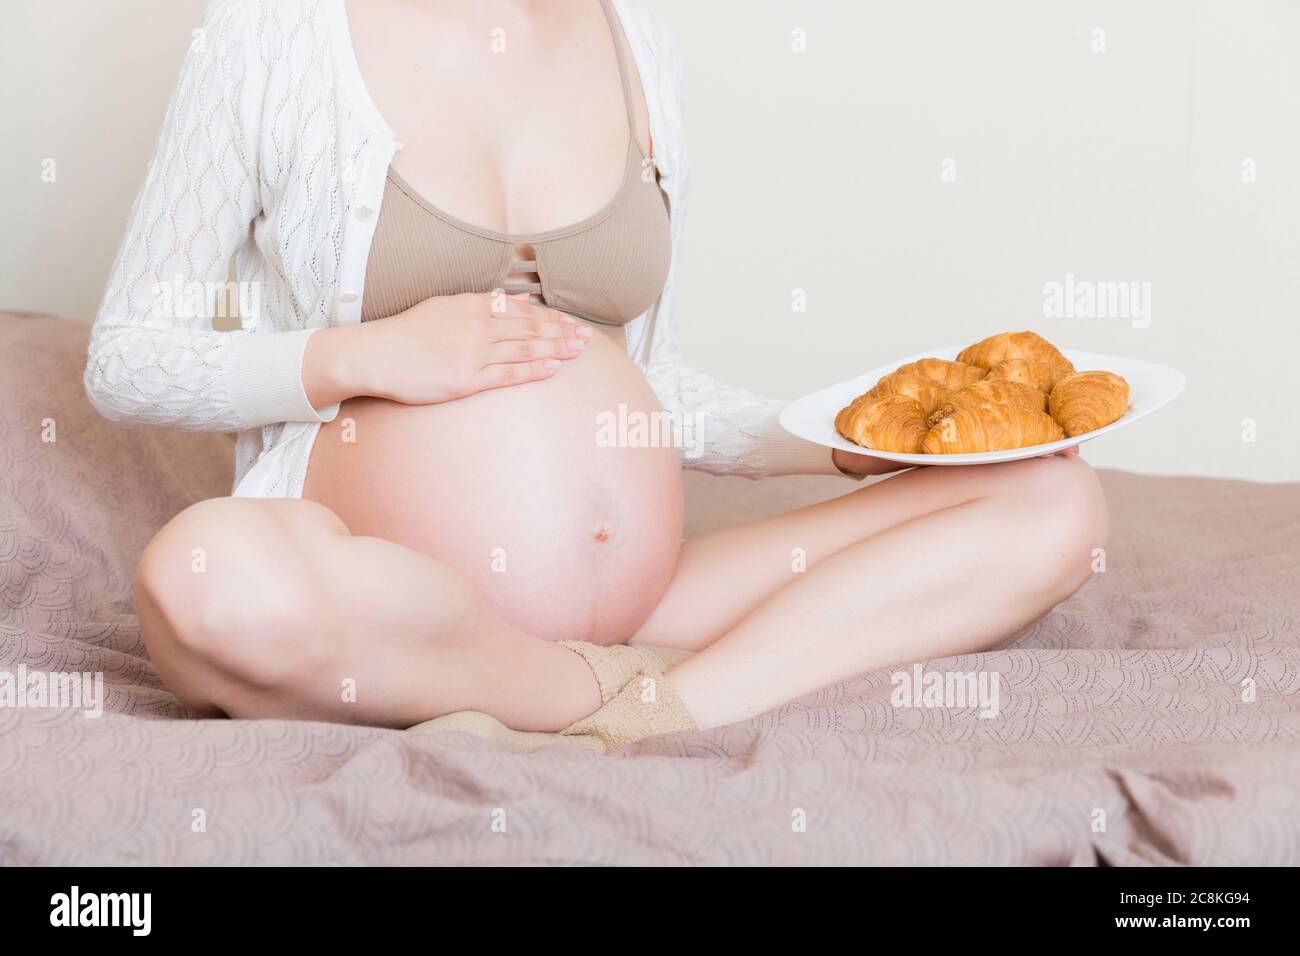 Nahaufnahme der jungen schwangeren Frau genießt essen Croissant im Bett. Ungesunde Gebäck während der Schwangerschaft Konzept. Stockfoto